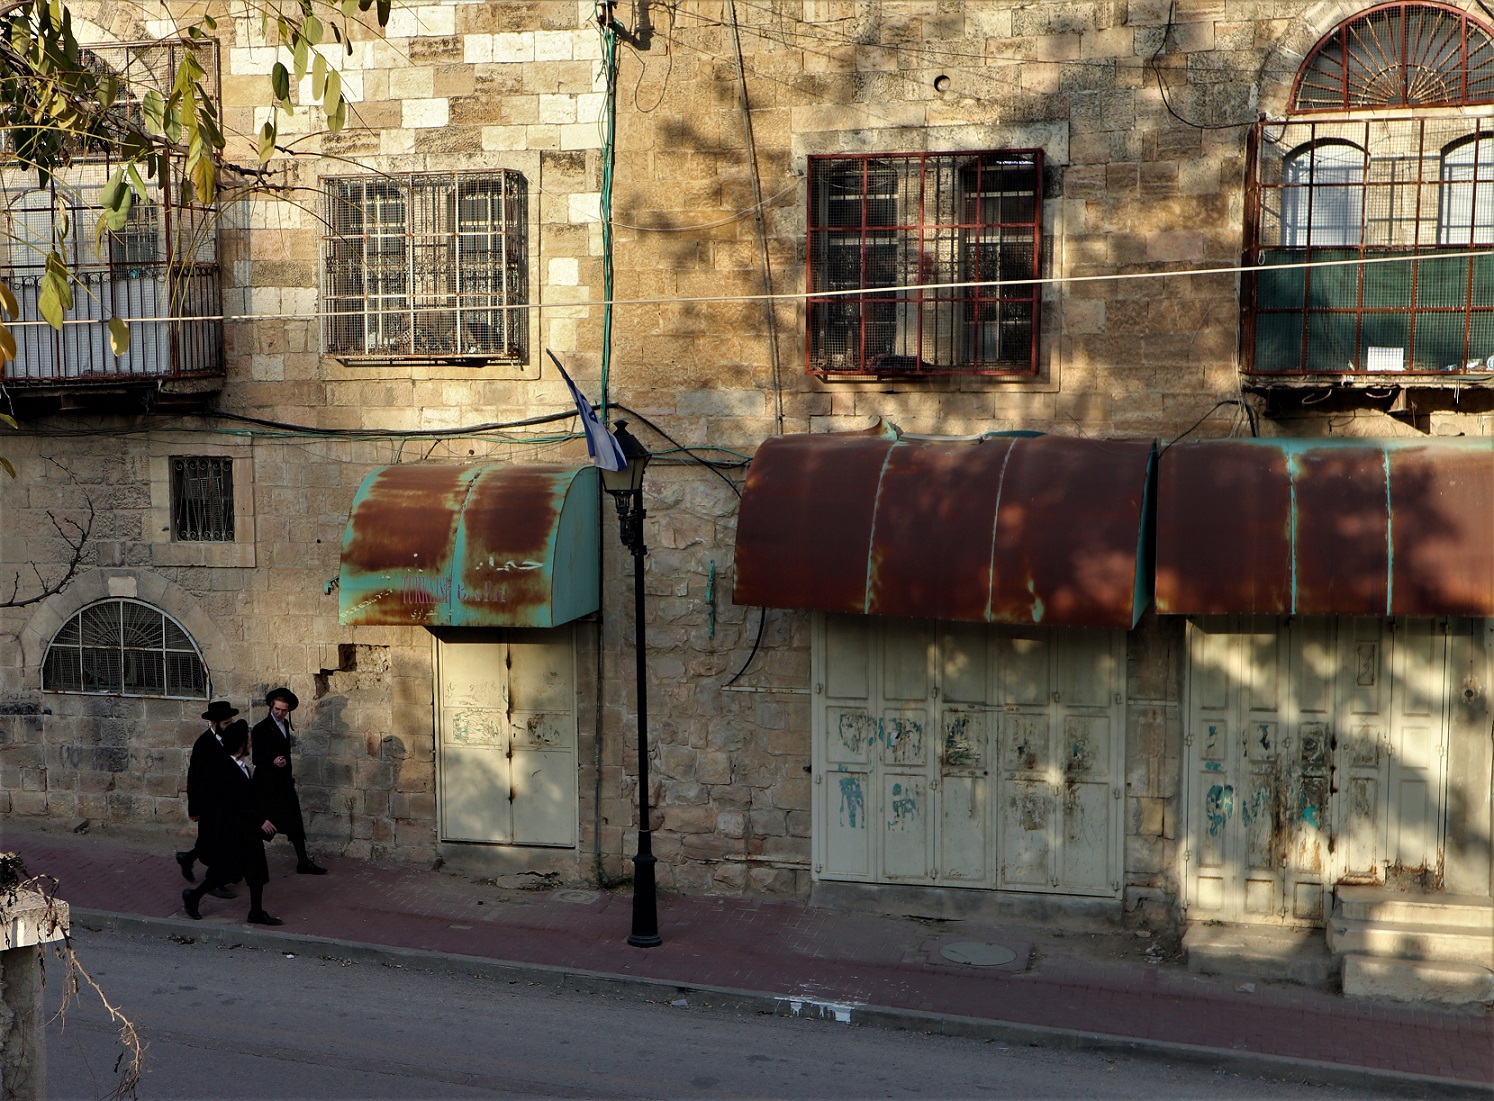 Autrefois vibrante, la vieille ville d’Hébron est aujourd’hui un labyrinthe désert où seuls colons et militaires, ainsi que quelques touristes, peuvent circuler à leur guise (MEE/Marie Niggli)